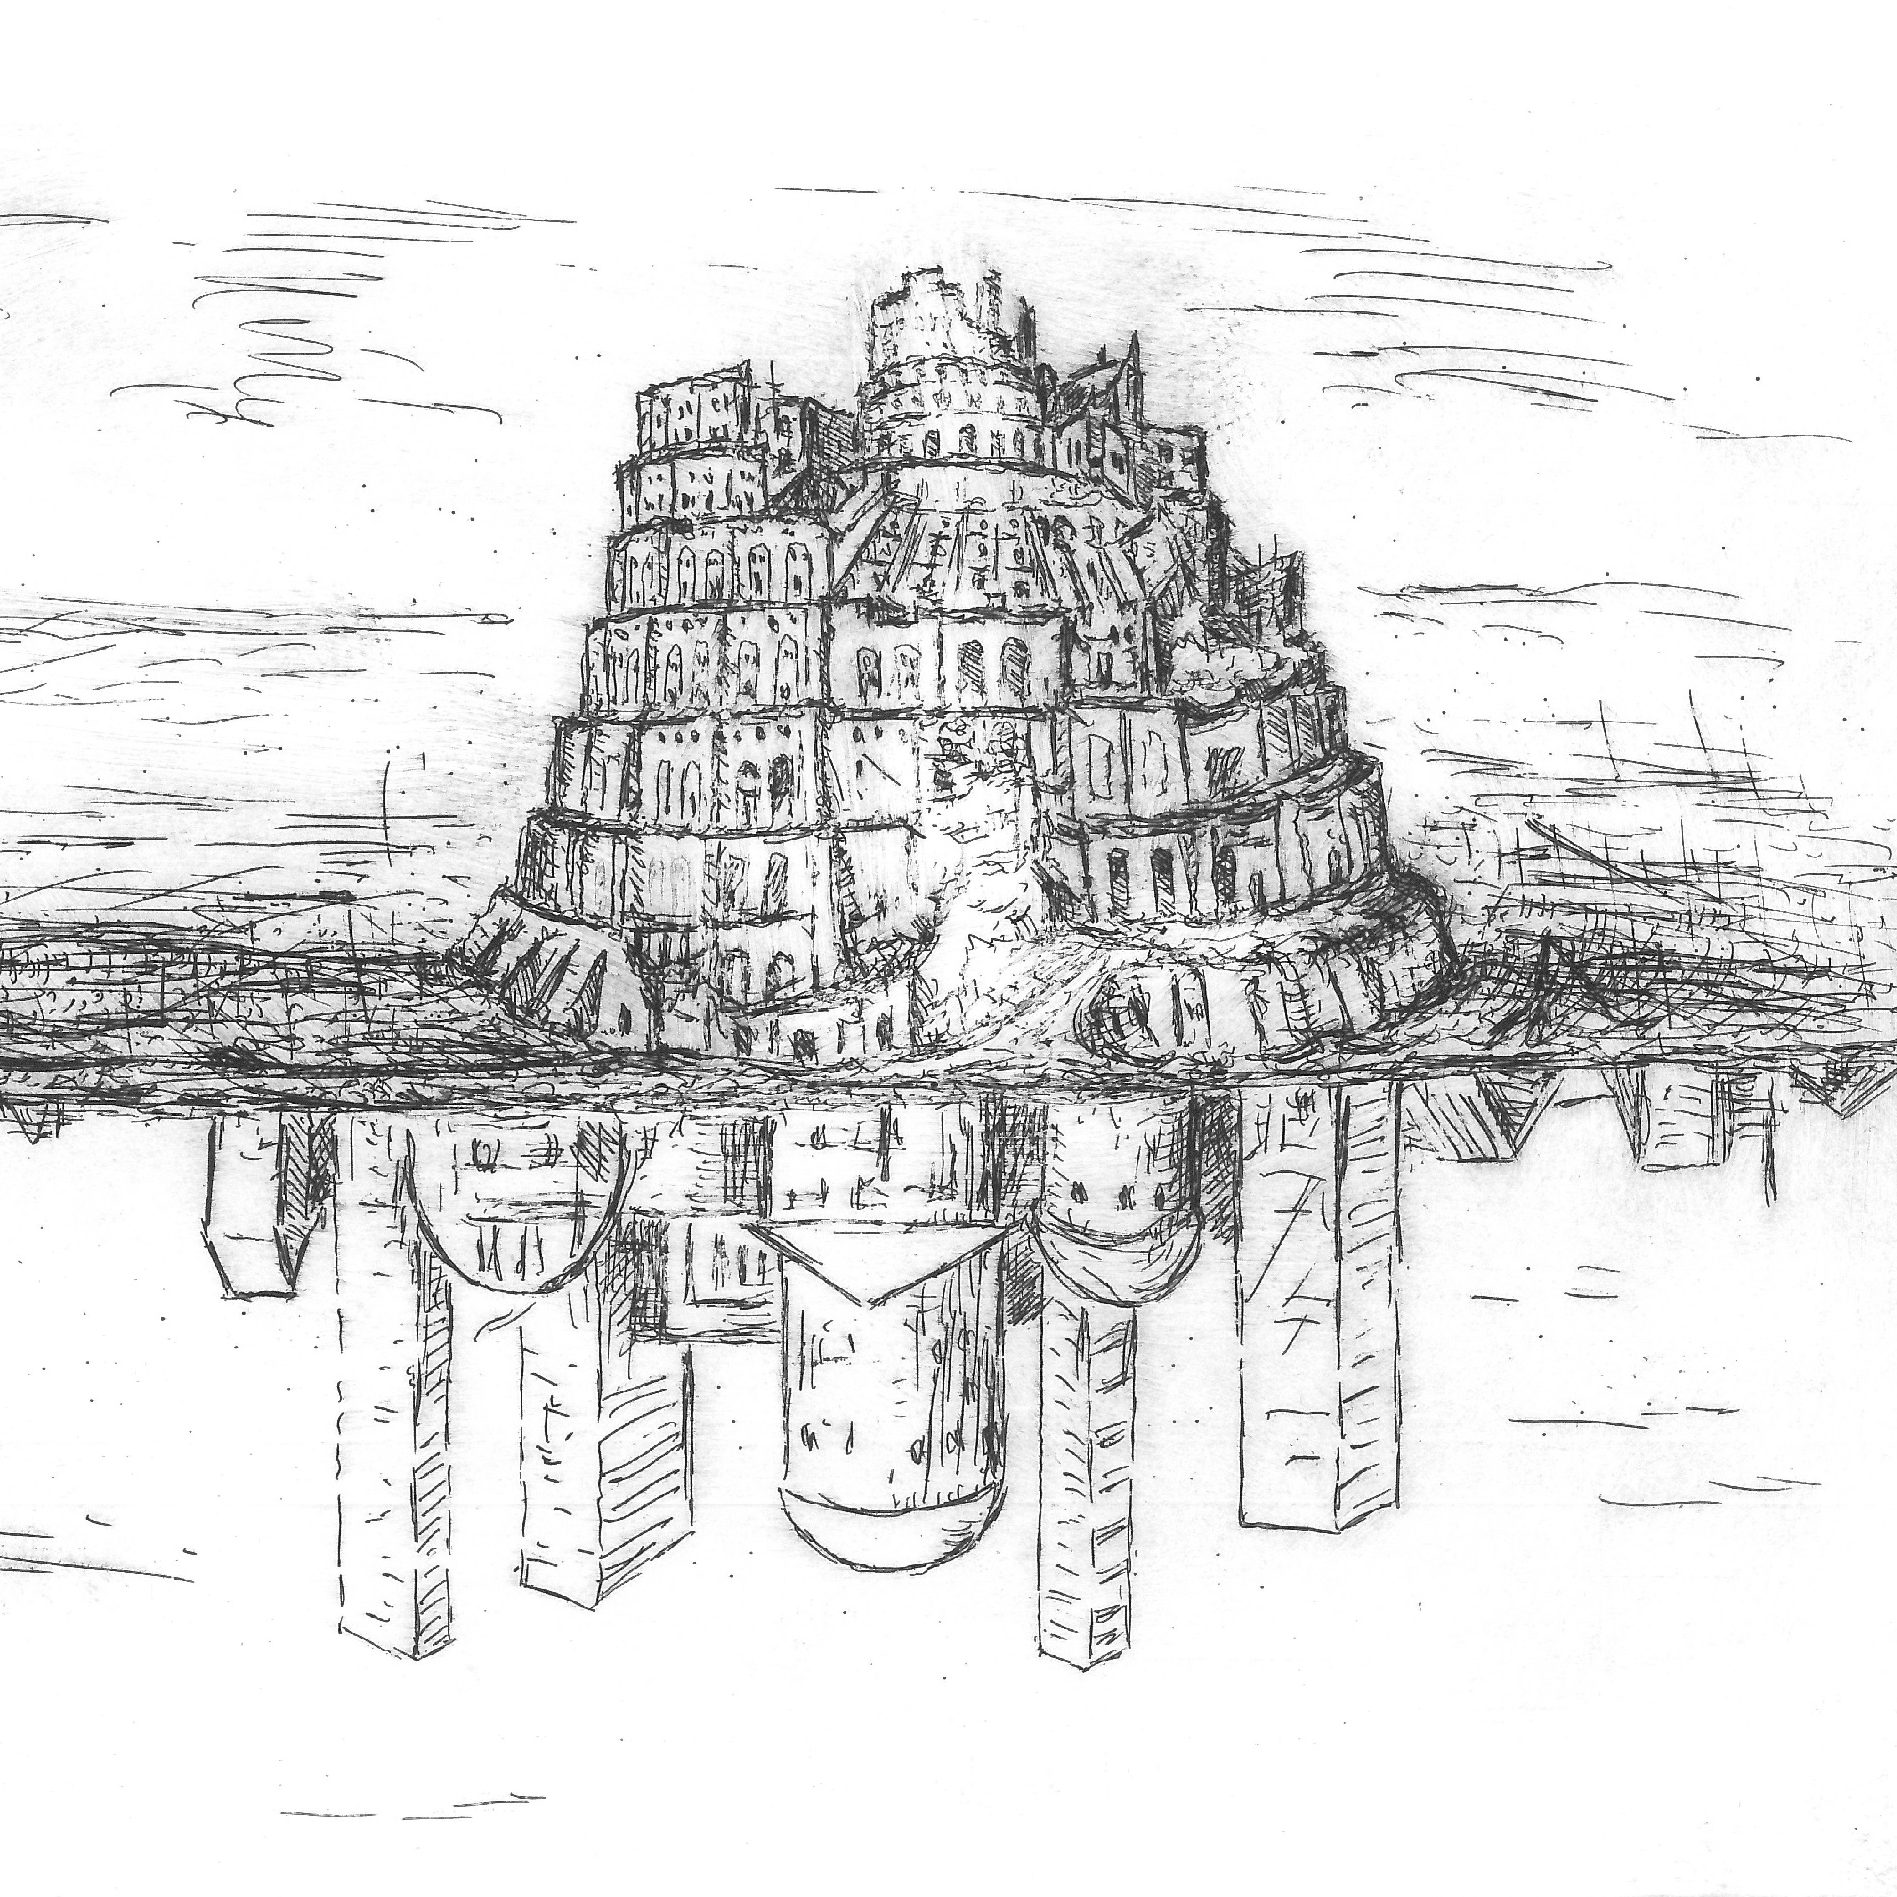 Turmbau zu Babel